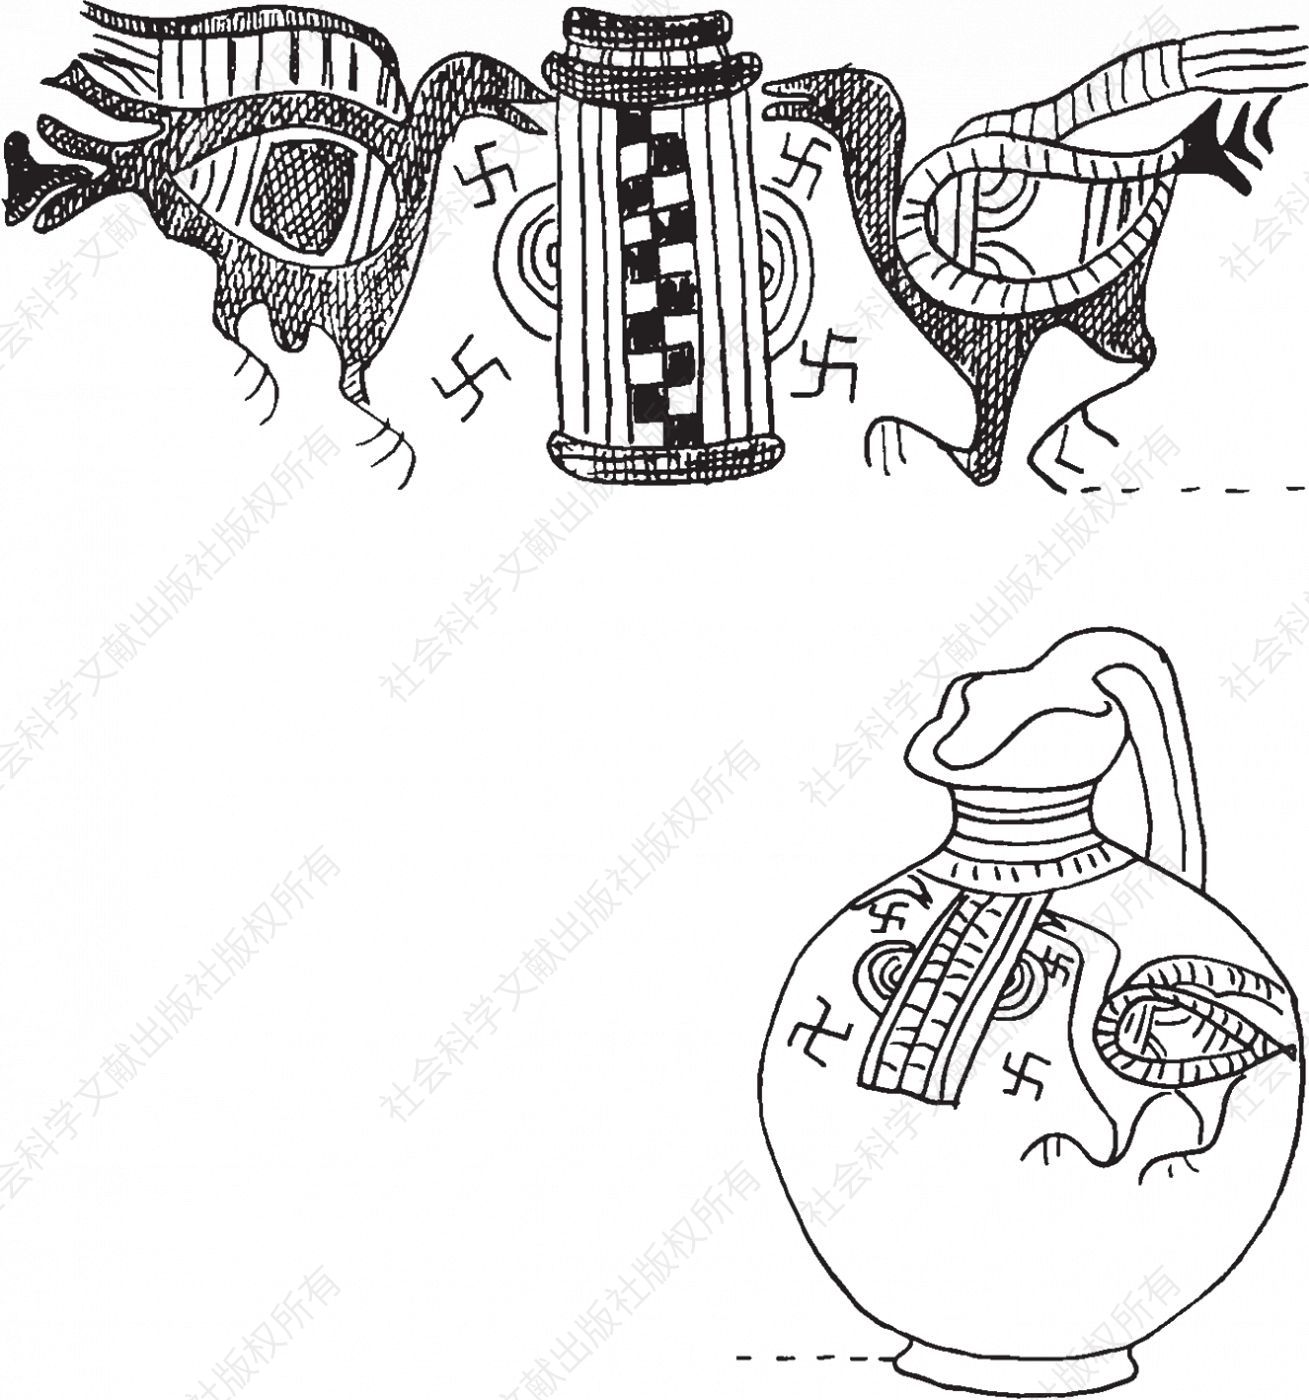 塞浦路斯花瓶及其细部，鸟和万字图案。大都会博物馆，纽约